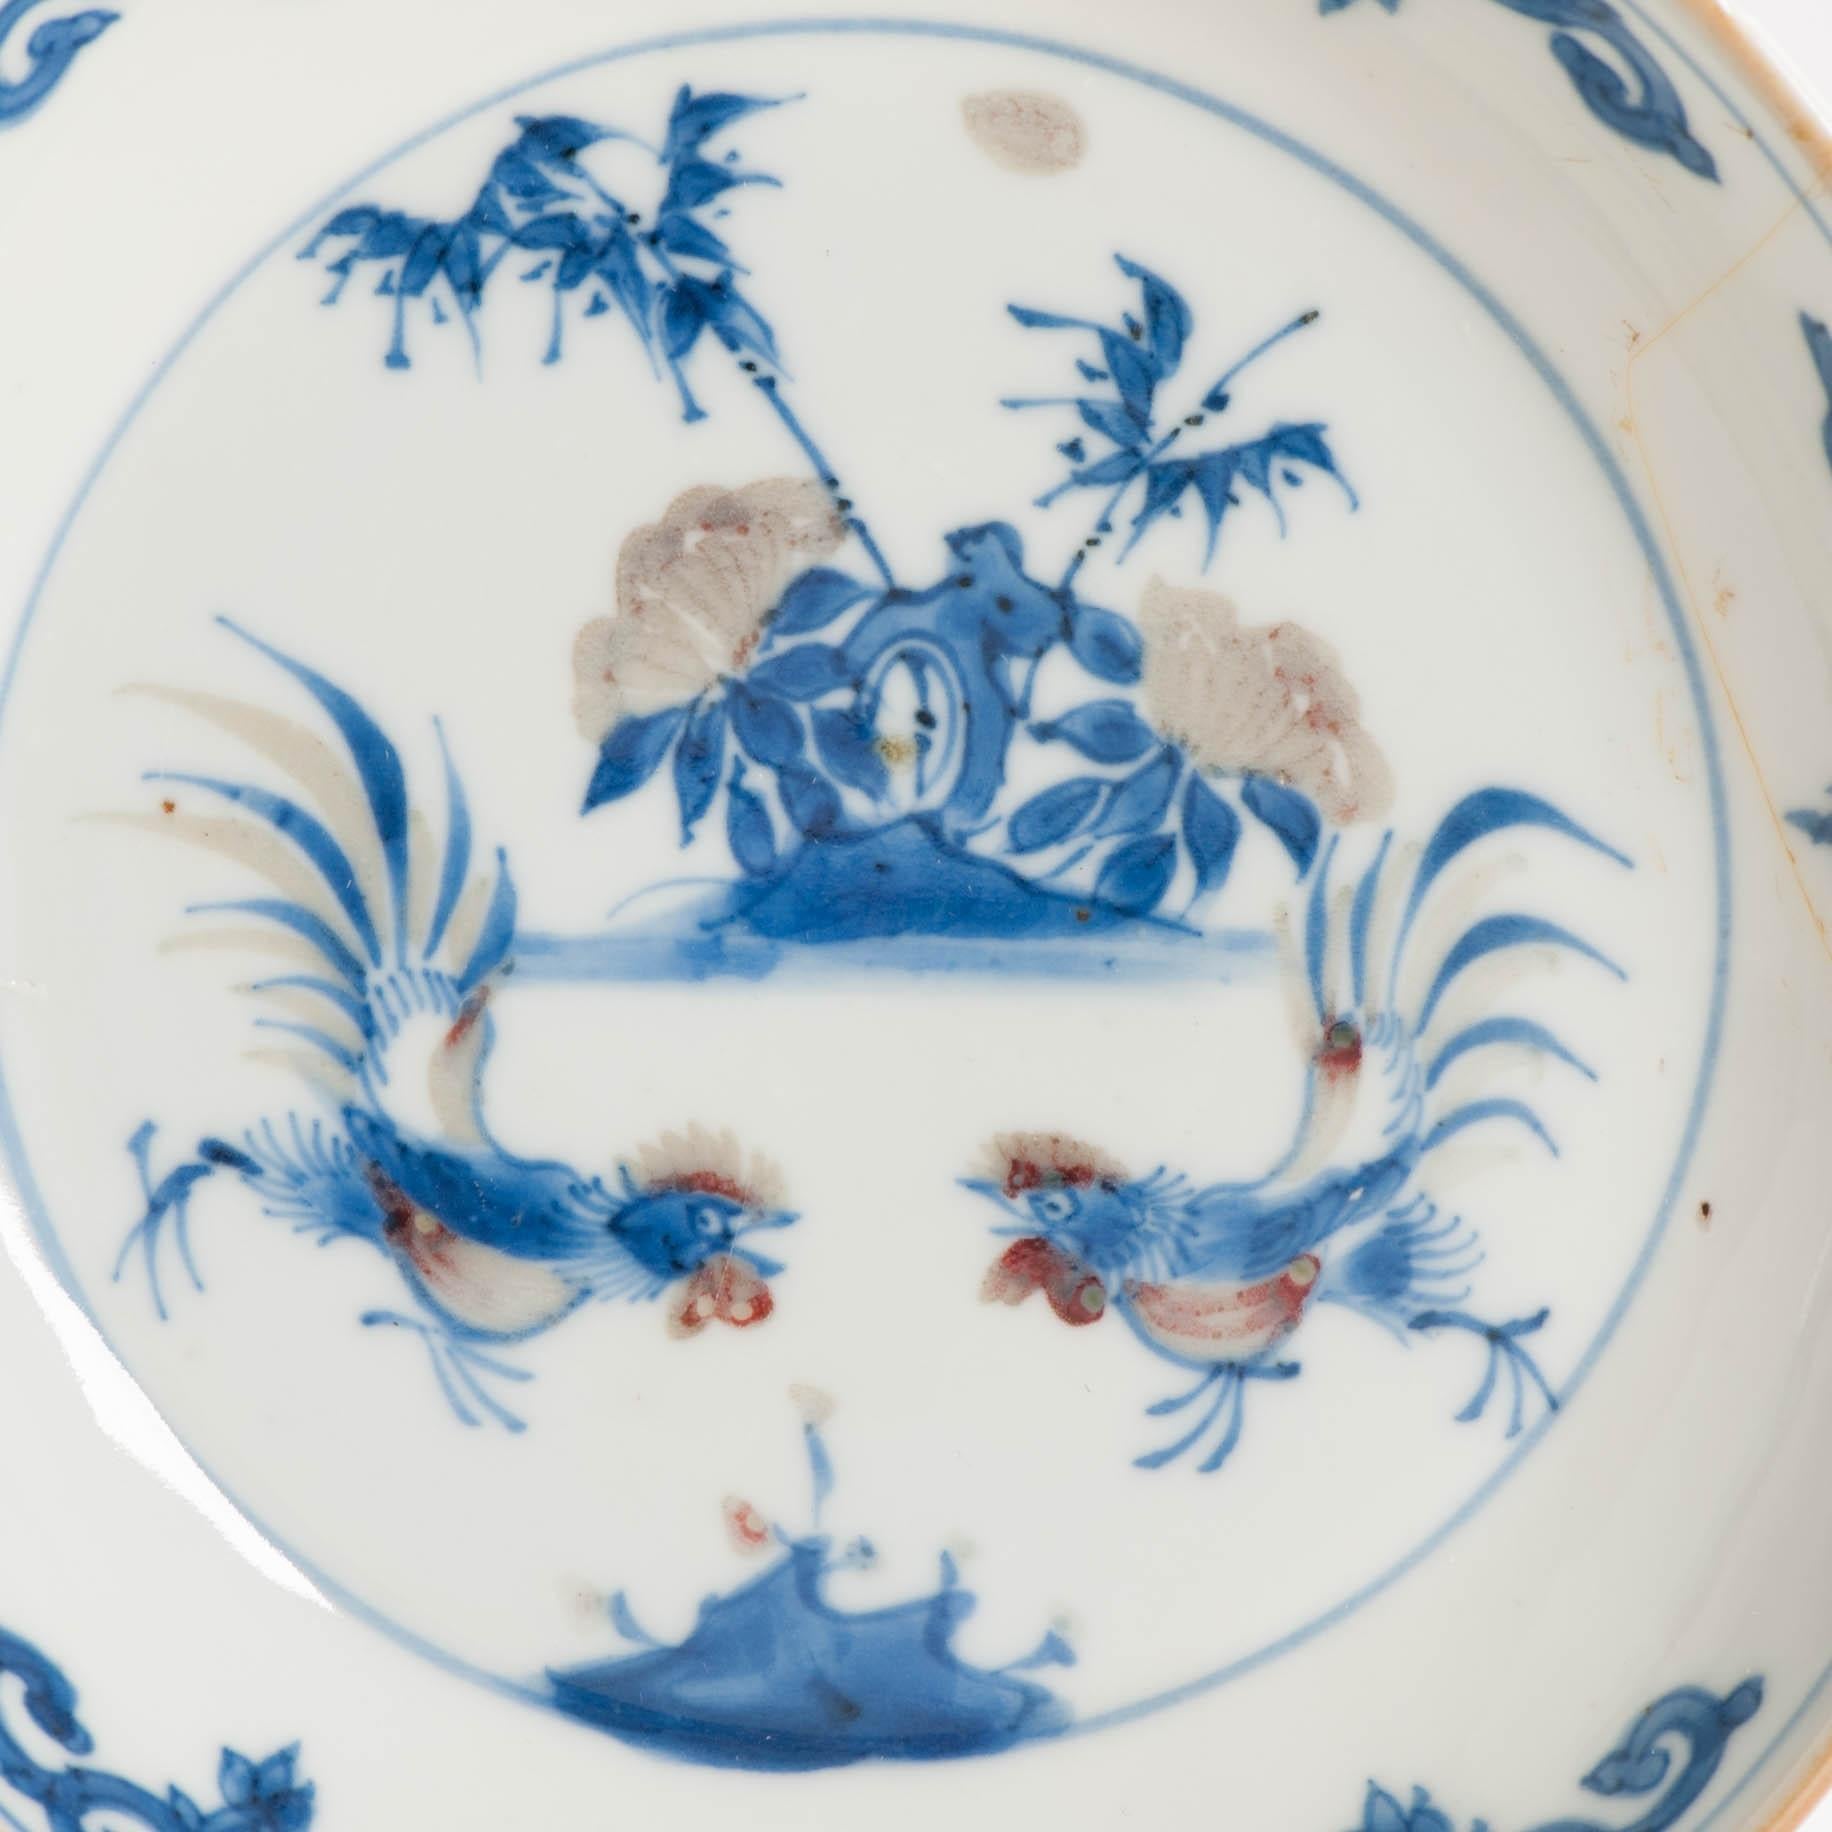 Petit plat

Porcelaine à décor bleu et rouge sous glaçure.

Dynastie Ming, période Tianqi ou Chongzhen (1621-1644)

Je partage avec vous ce joli petit plat datant du début du 17e siècle. Il n'est pas marqué et date de la période Tianqi/Chongzhen.